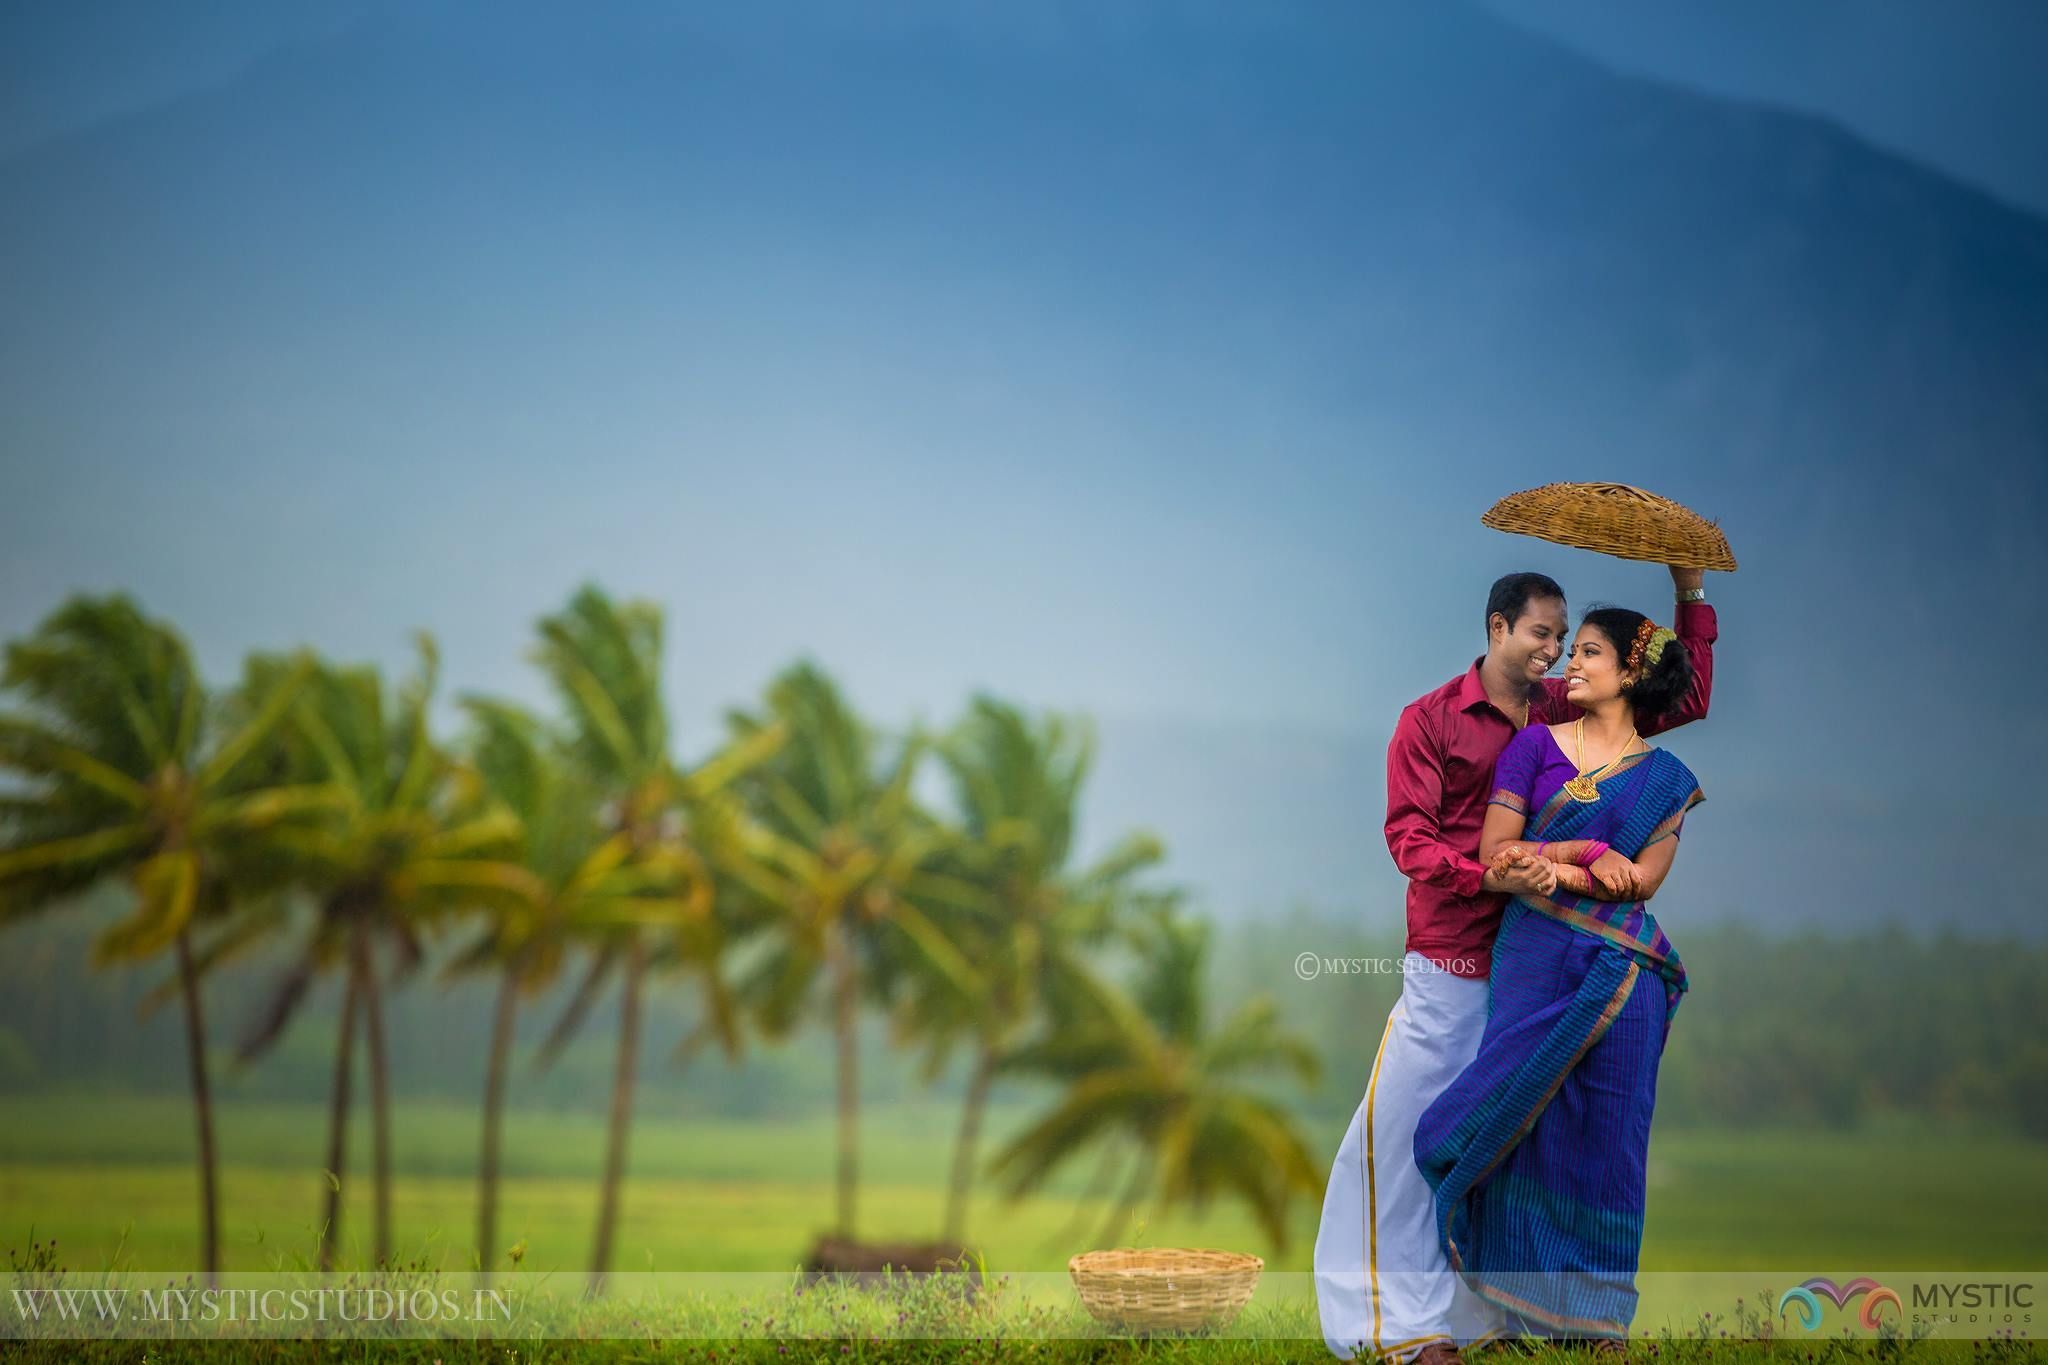 Rhythm of Love Interesting Journey To Village Life. Wedding photography india, Wedding photohoot poses, Wedding couple poses